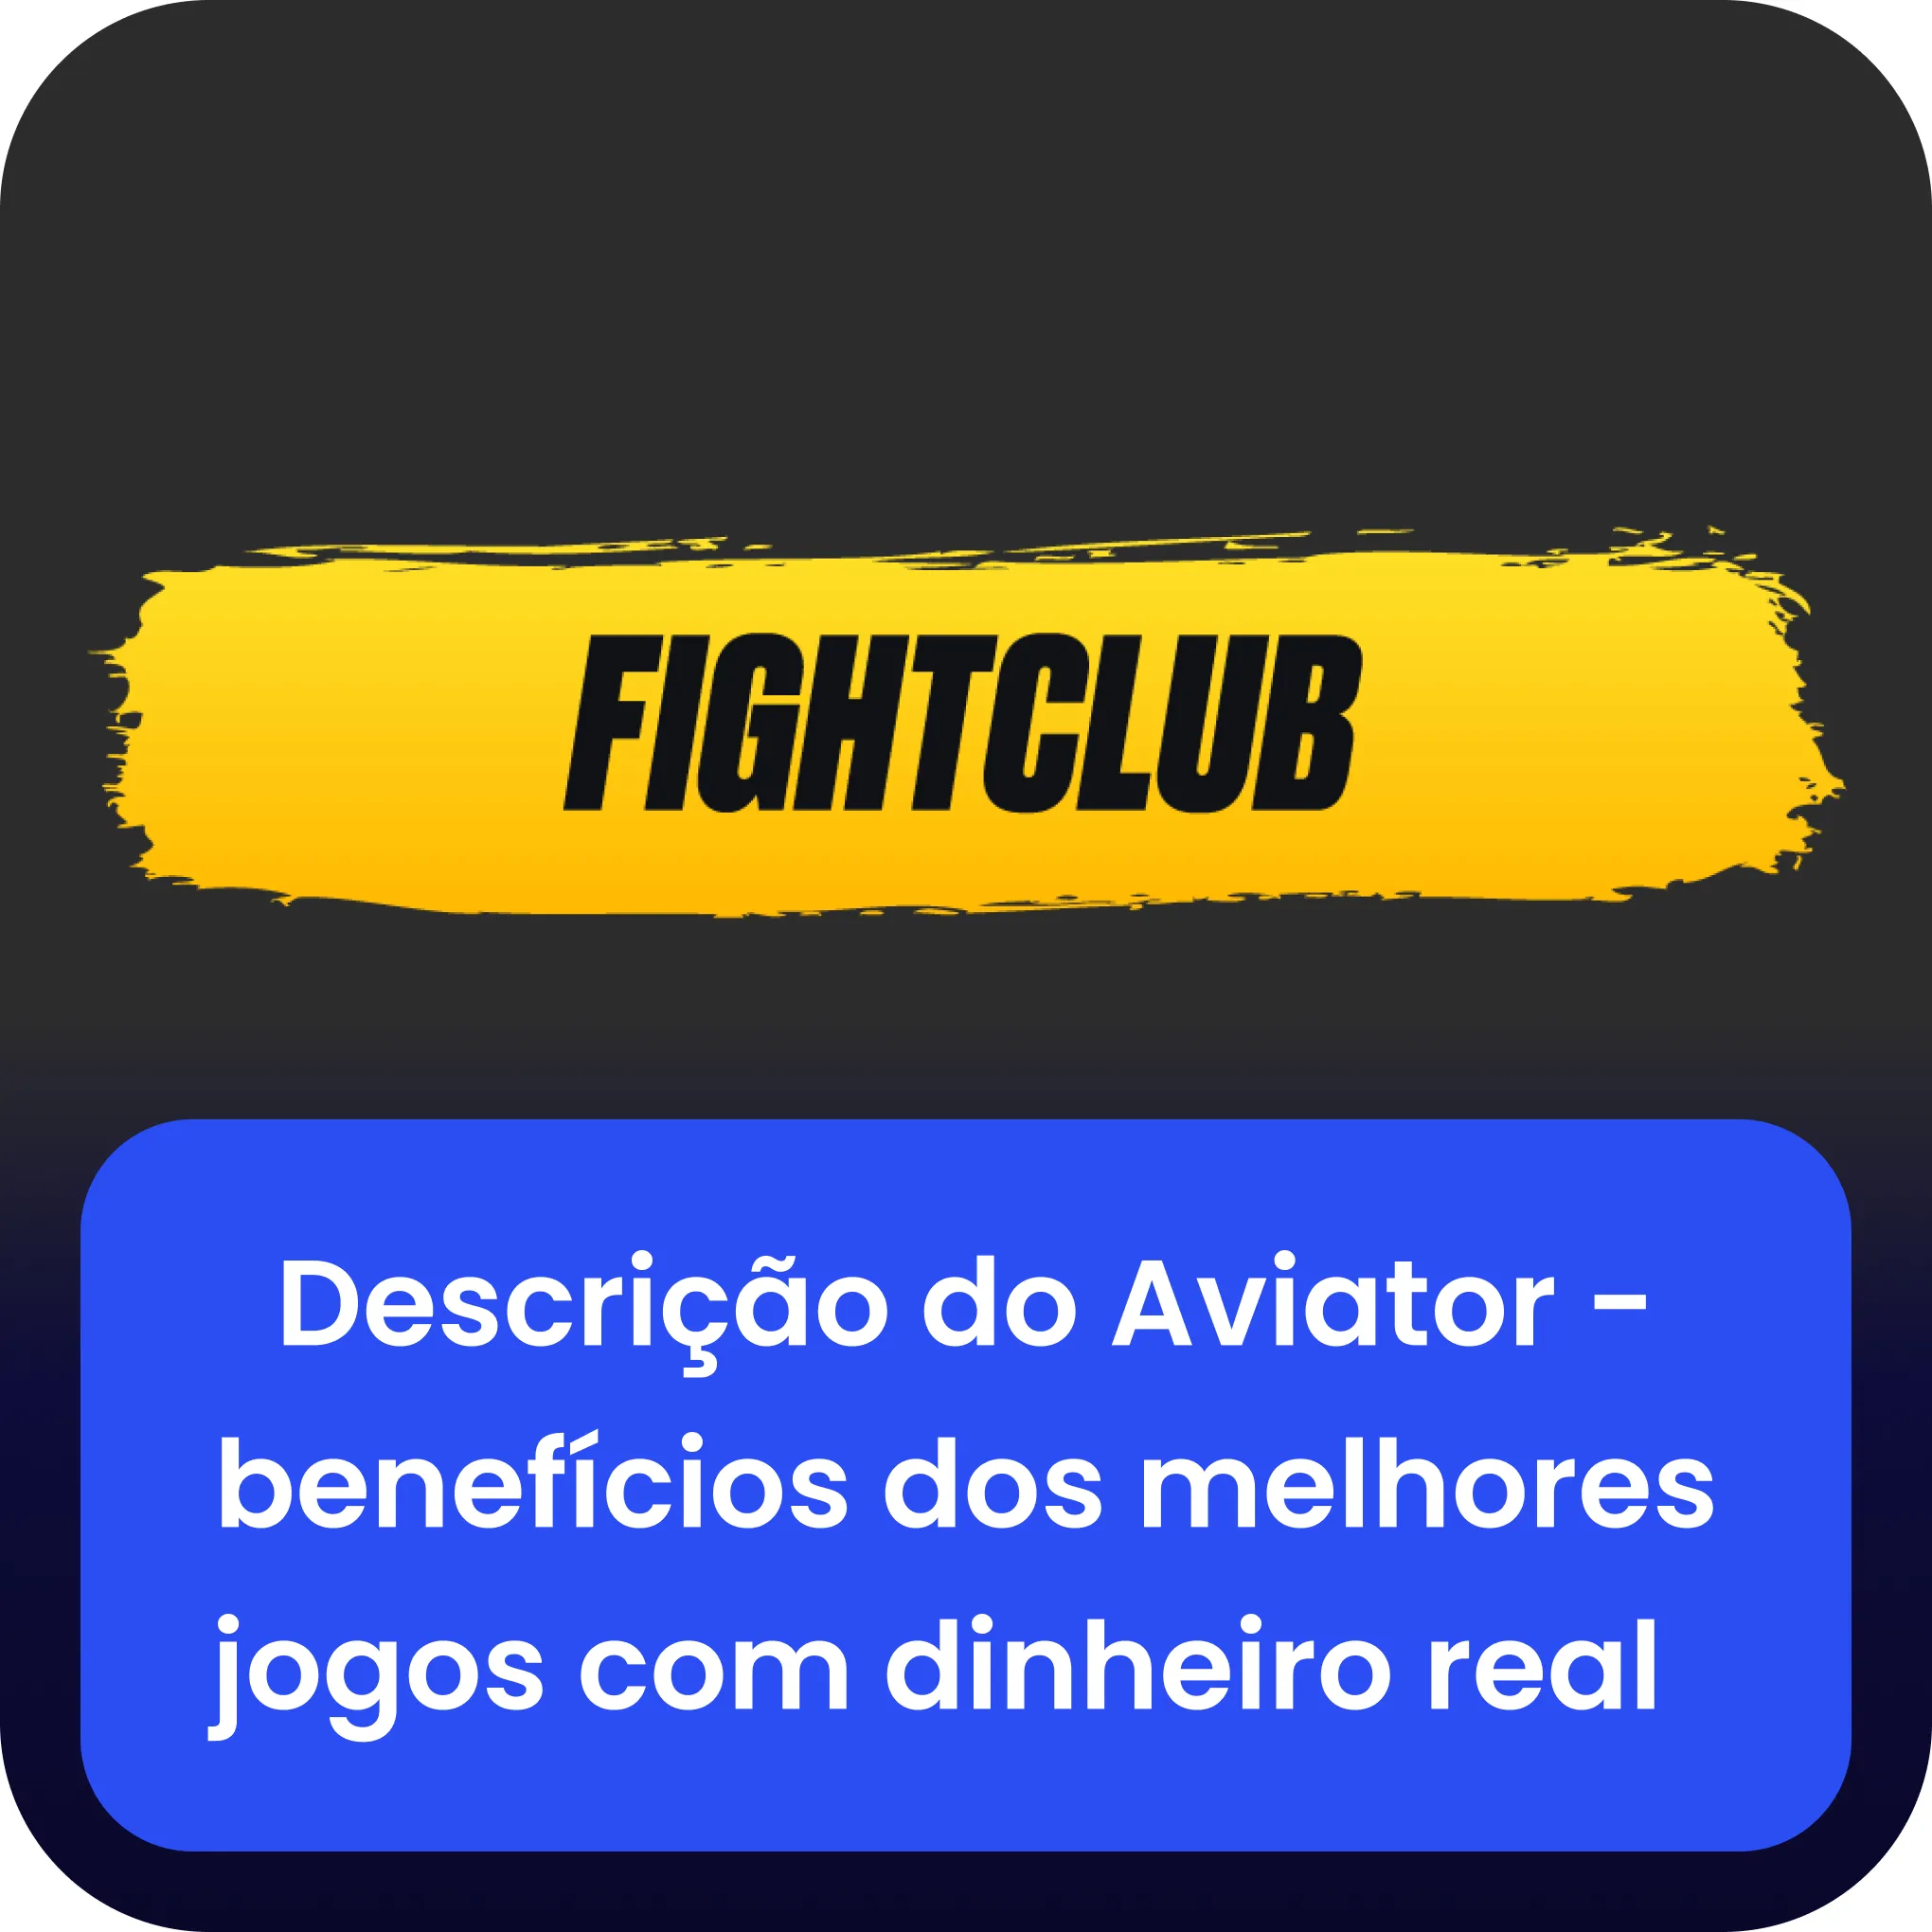 fight club aviator descrição